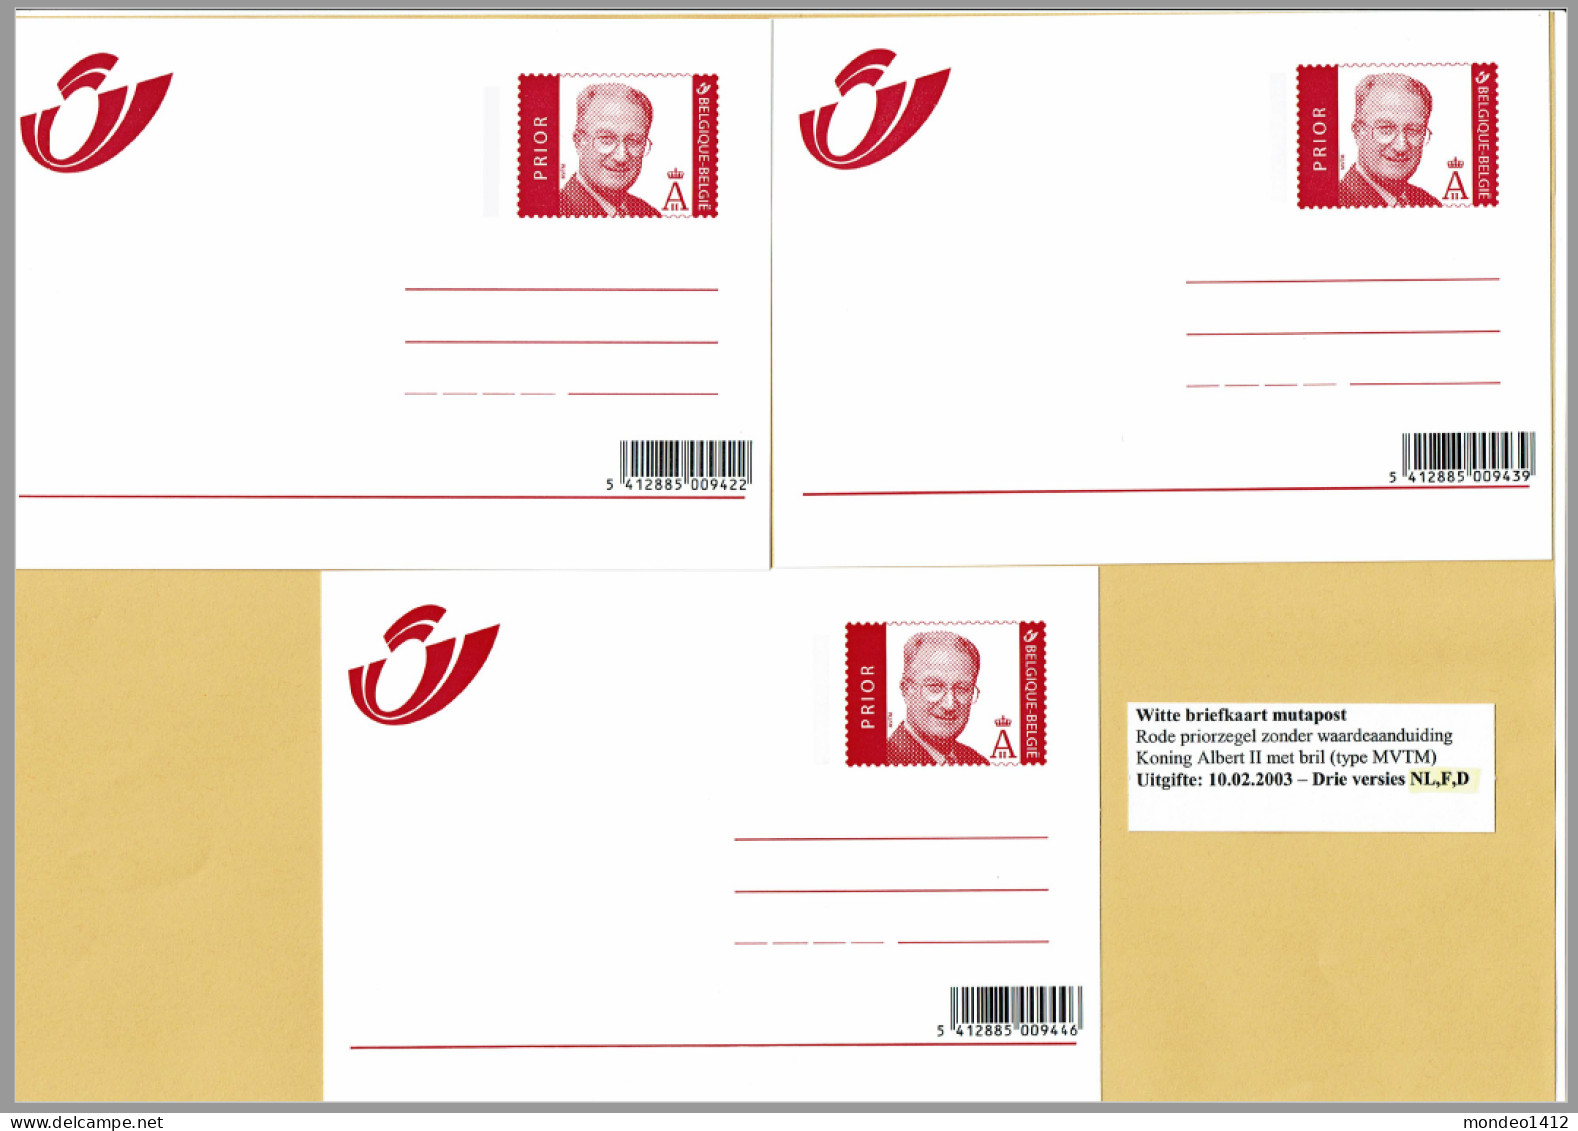 2003 - Briefkaarten - Adresverandering, Avis De Changement D'adresse Prior Zegel - Compleet N-F-D - Avviso Cambiamento Indirizzo